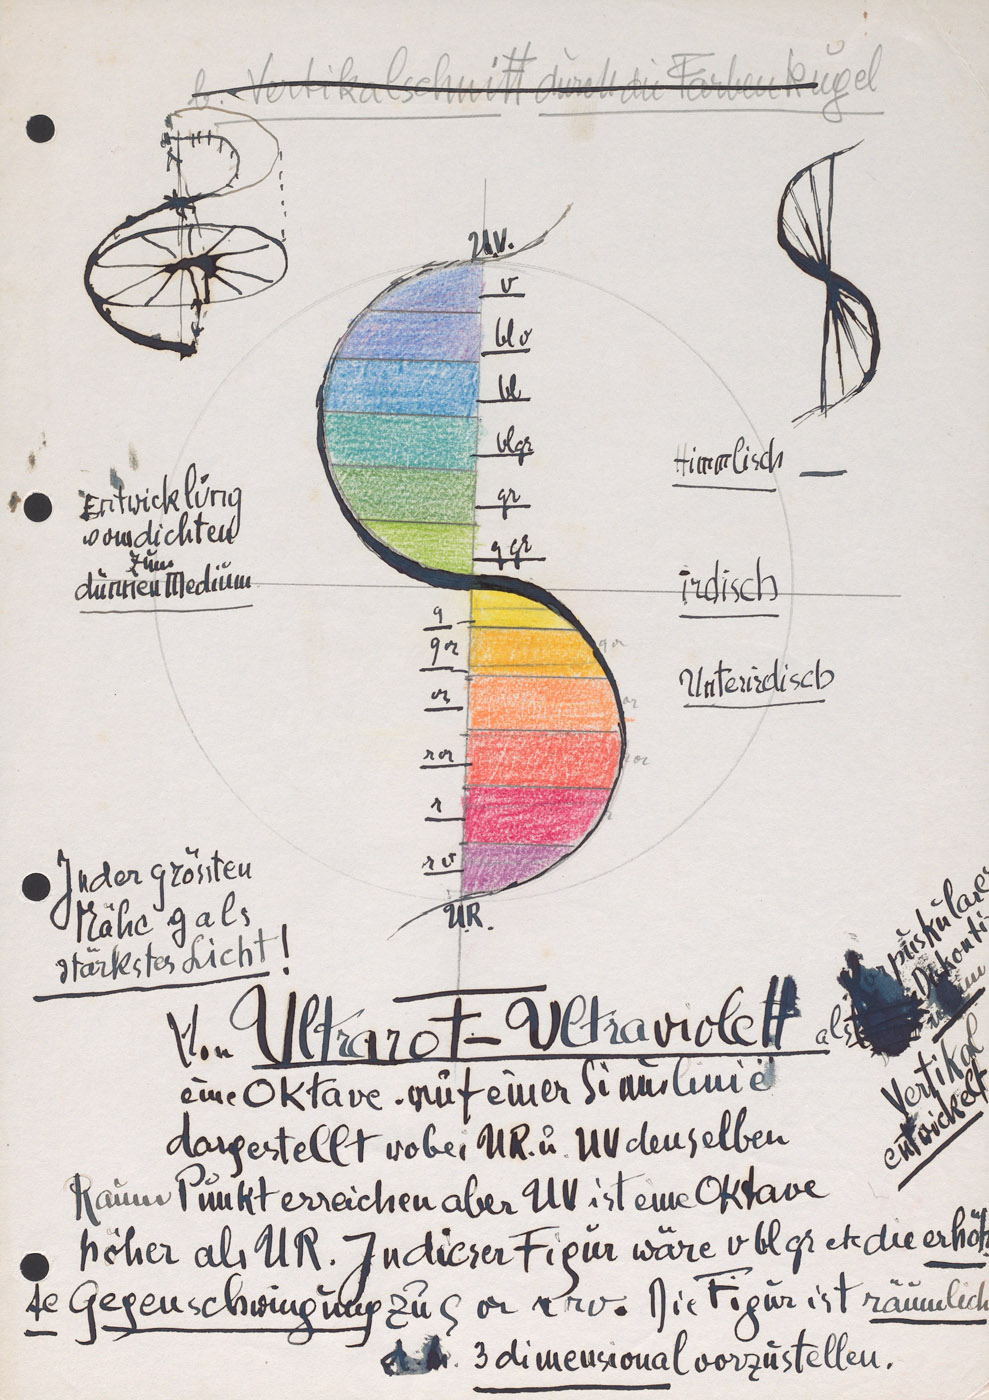 Johannes Itten, Manuskript zur Farbenlehre, vermutlich 1950er Jahre (Hs NL 11: Fd 12; <a href="https://doi.org/10.7891/e-manuscripta-138500">Digitalisat</a>)